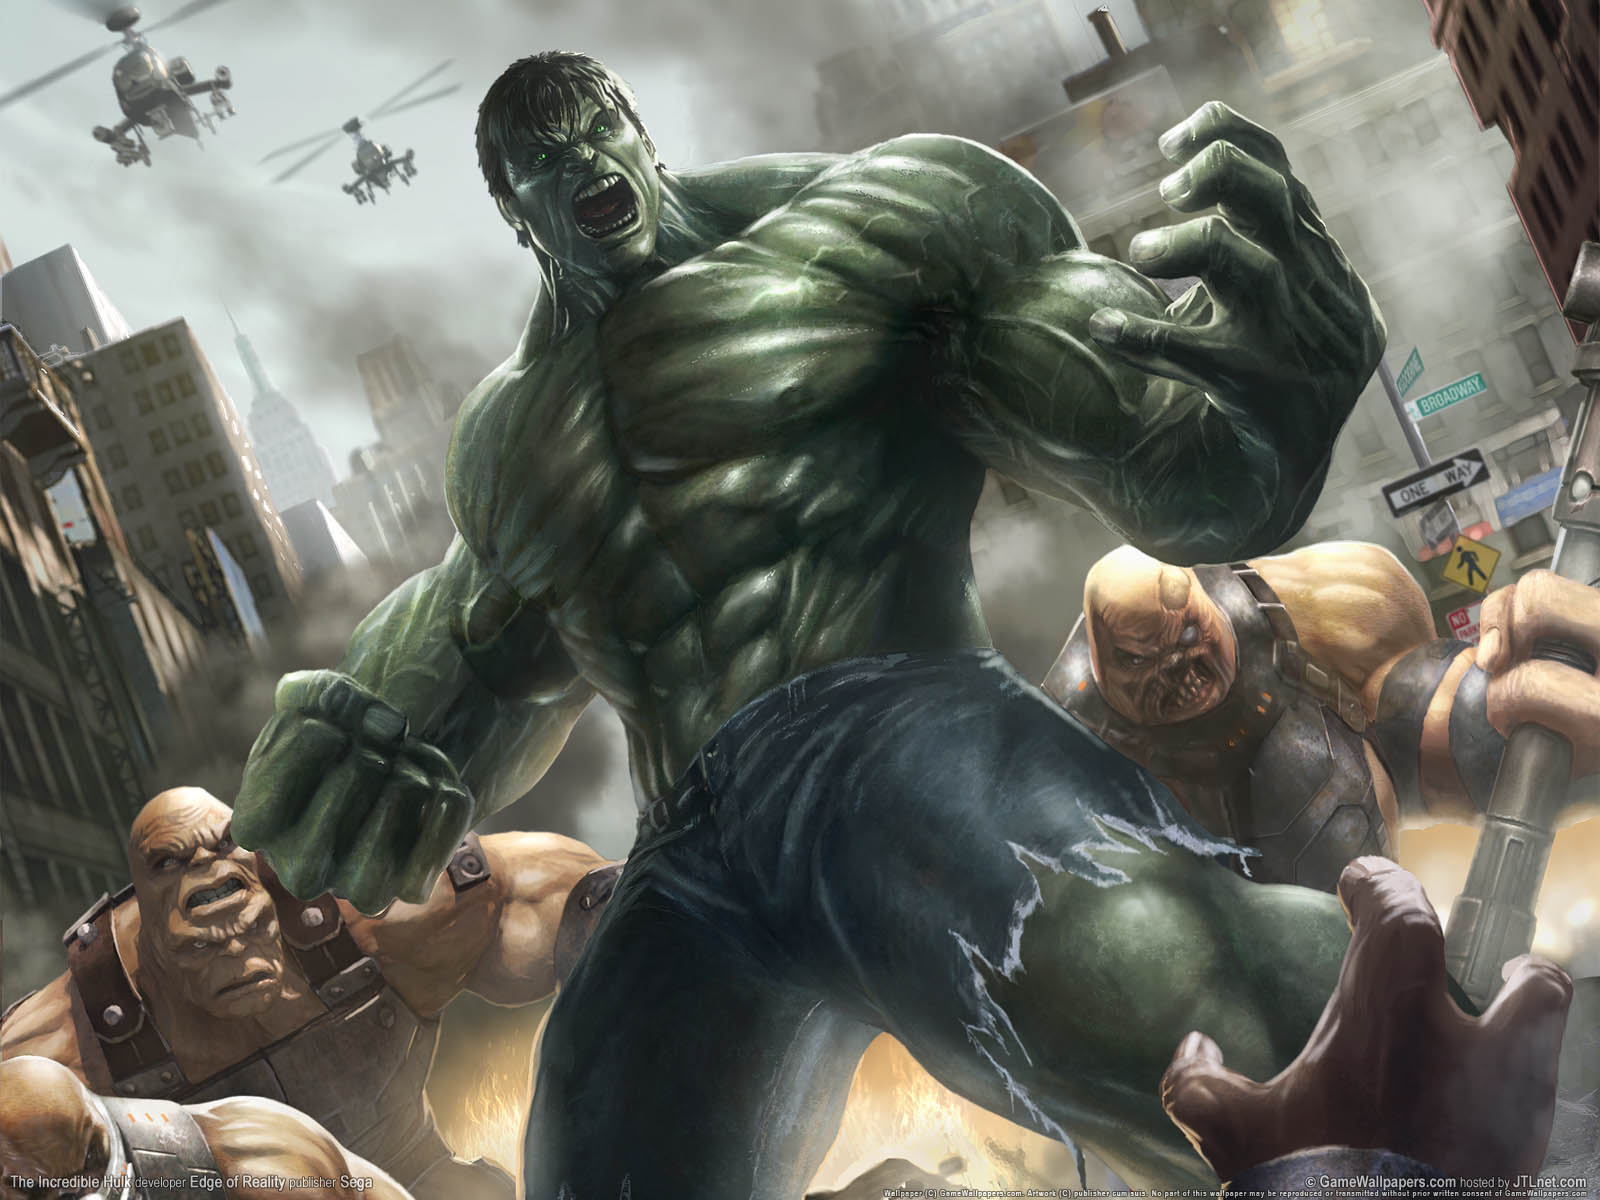 The Incredible Hulk Wallpaper Jpg